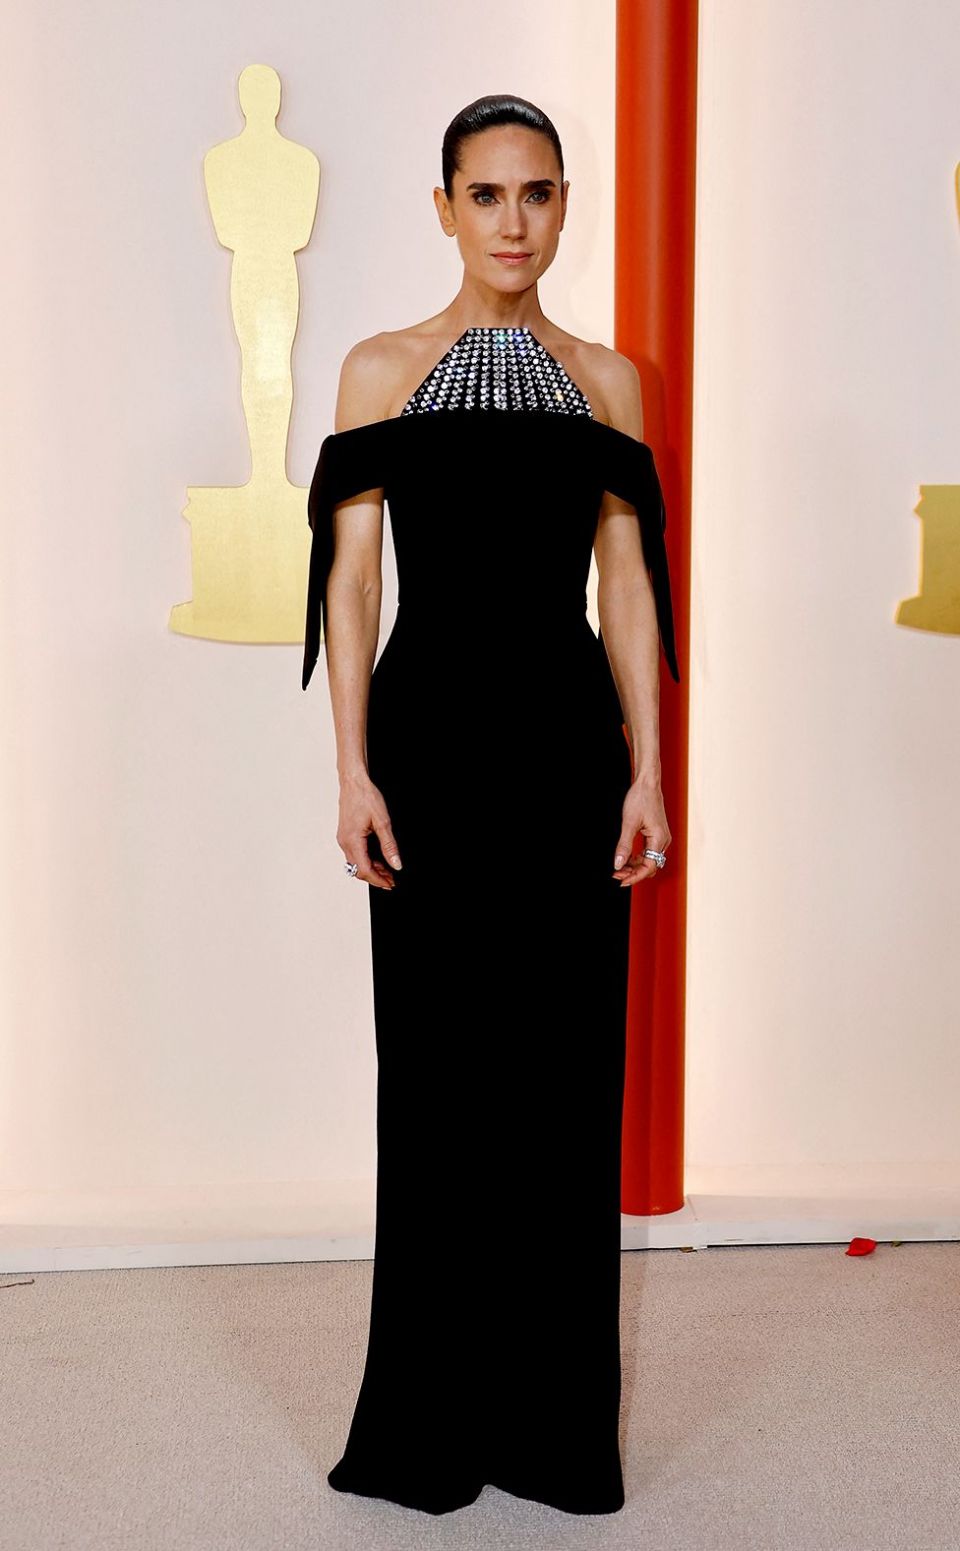 2023 年 3 月 12 日，在美国加利福尼亚州洛杉矶好莱坞举行的第 95 届奥斯卡颁奖典礼上，詹妮弗康纳利在香槟色红地毯上摆姿势